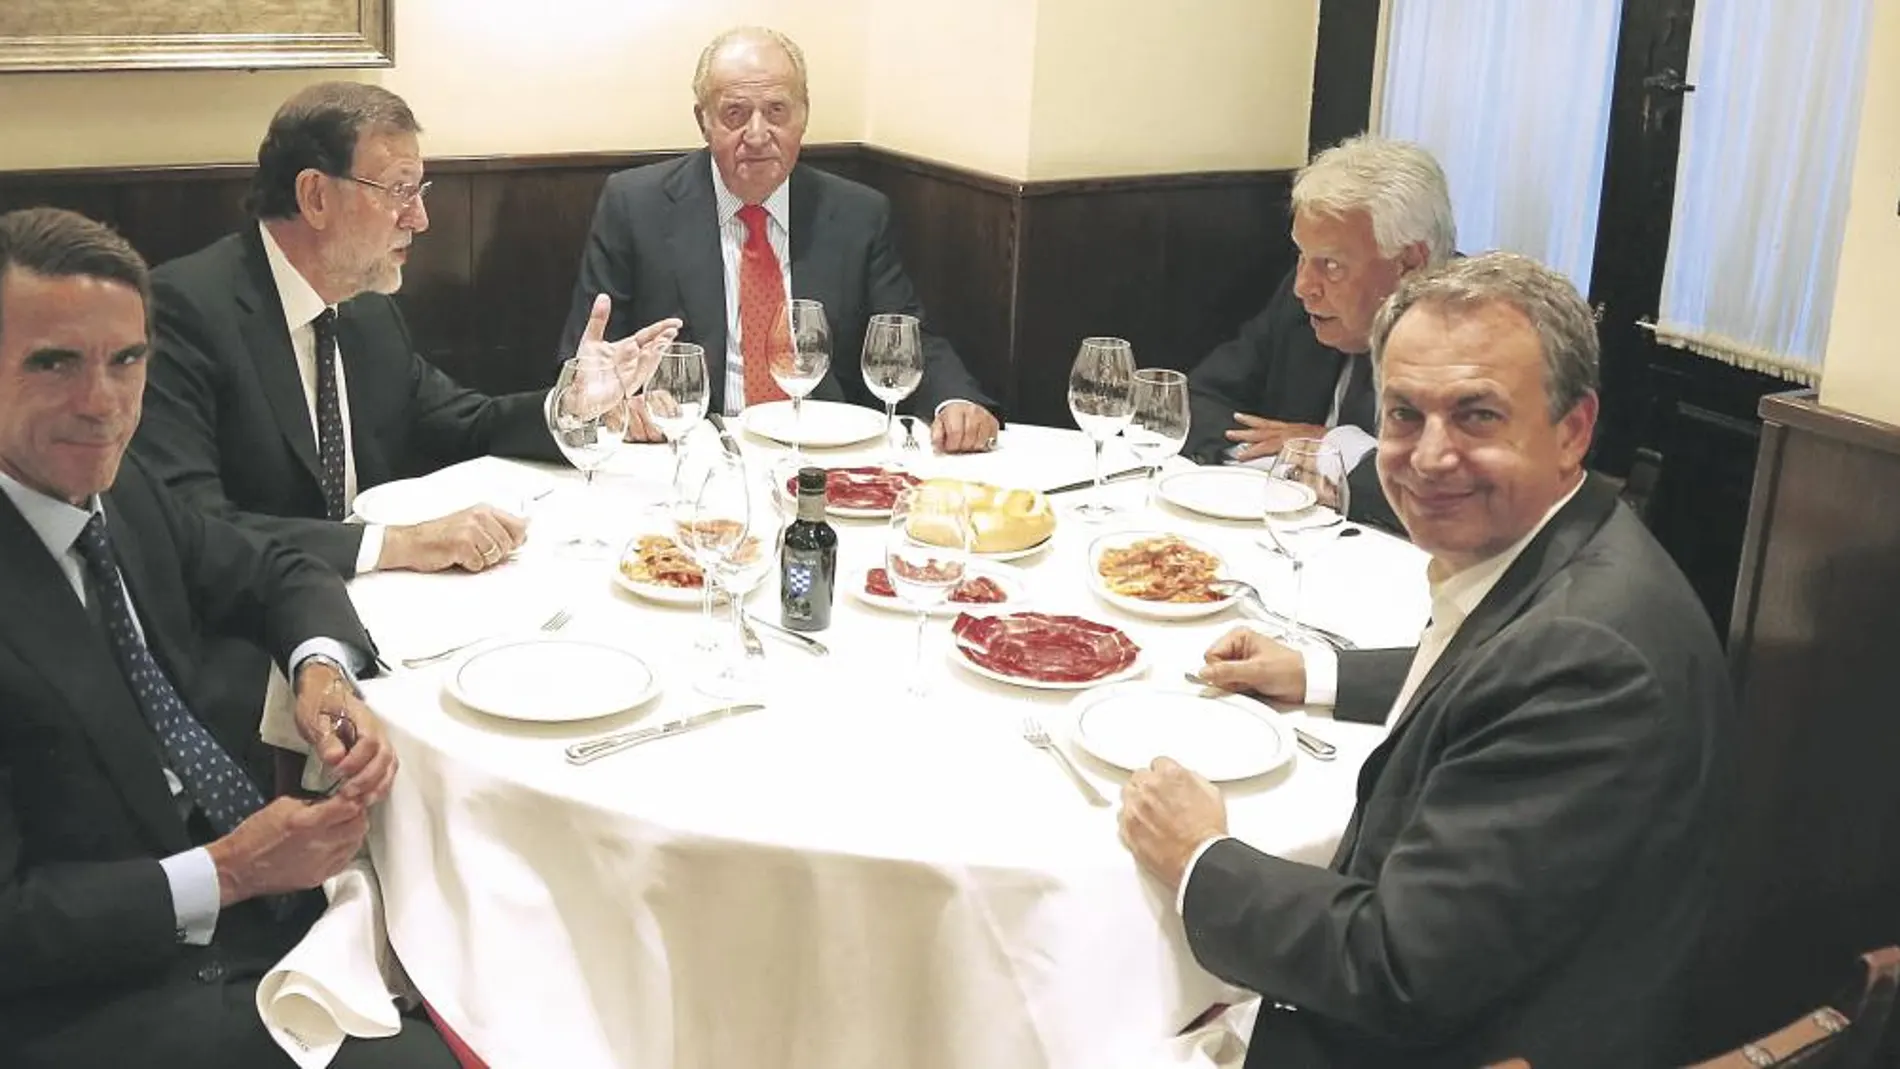 Don Juan Carlos reunió en una cena a Aznar, Rajoy, González y Zapatero en Casa Lucio para conmemorar la onomástica del Monarca tras cumplirse un año de su abdicación.